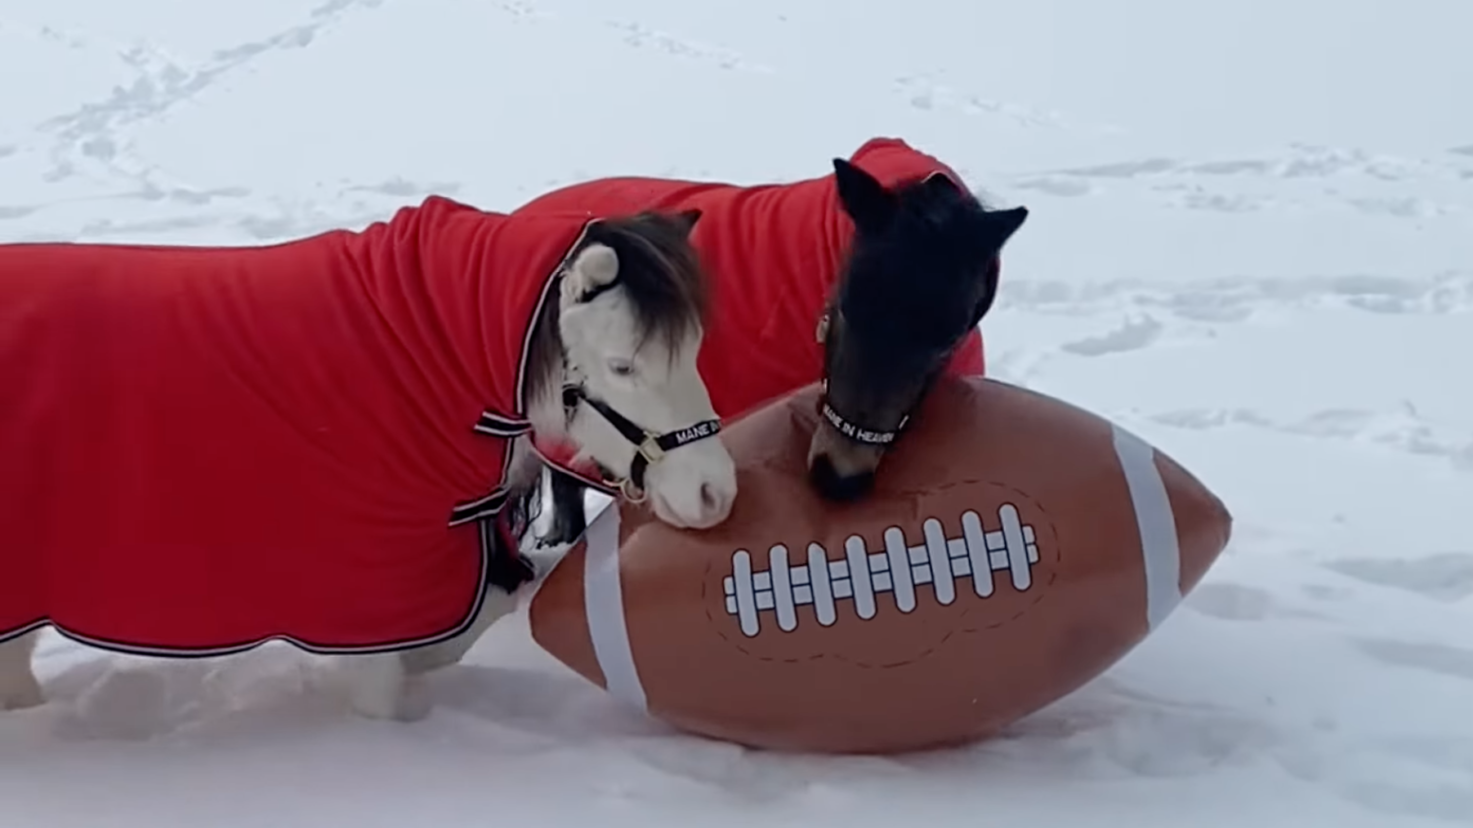 Miniature horses play "Pony Bowl" with football